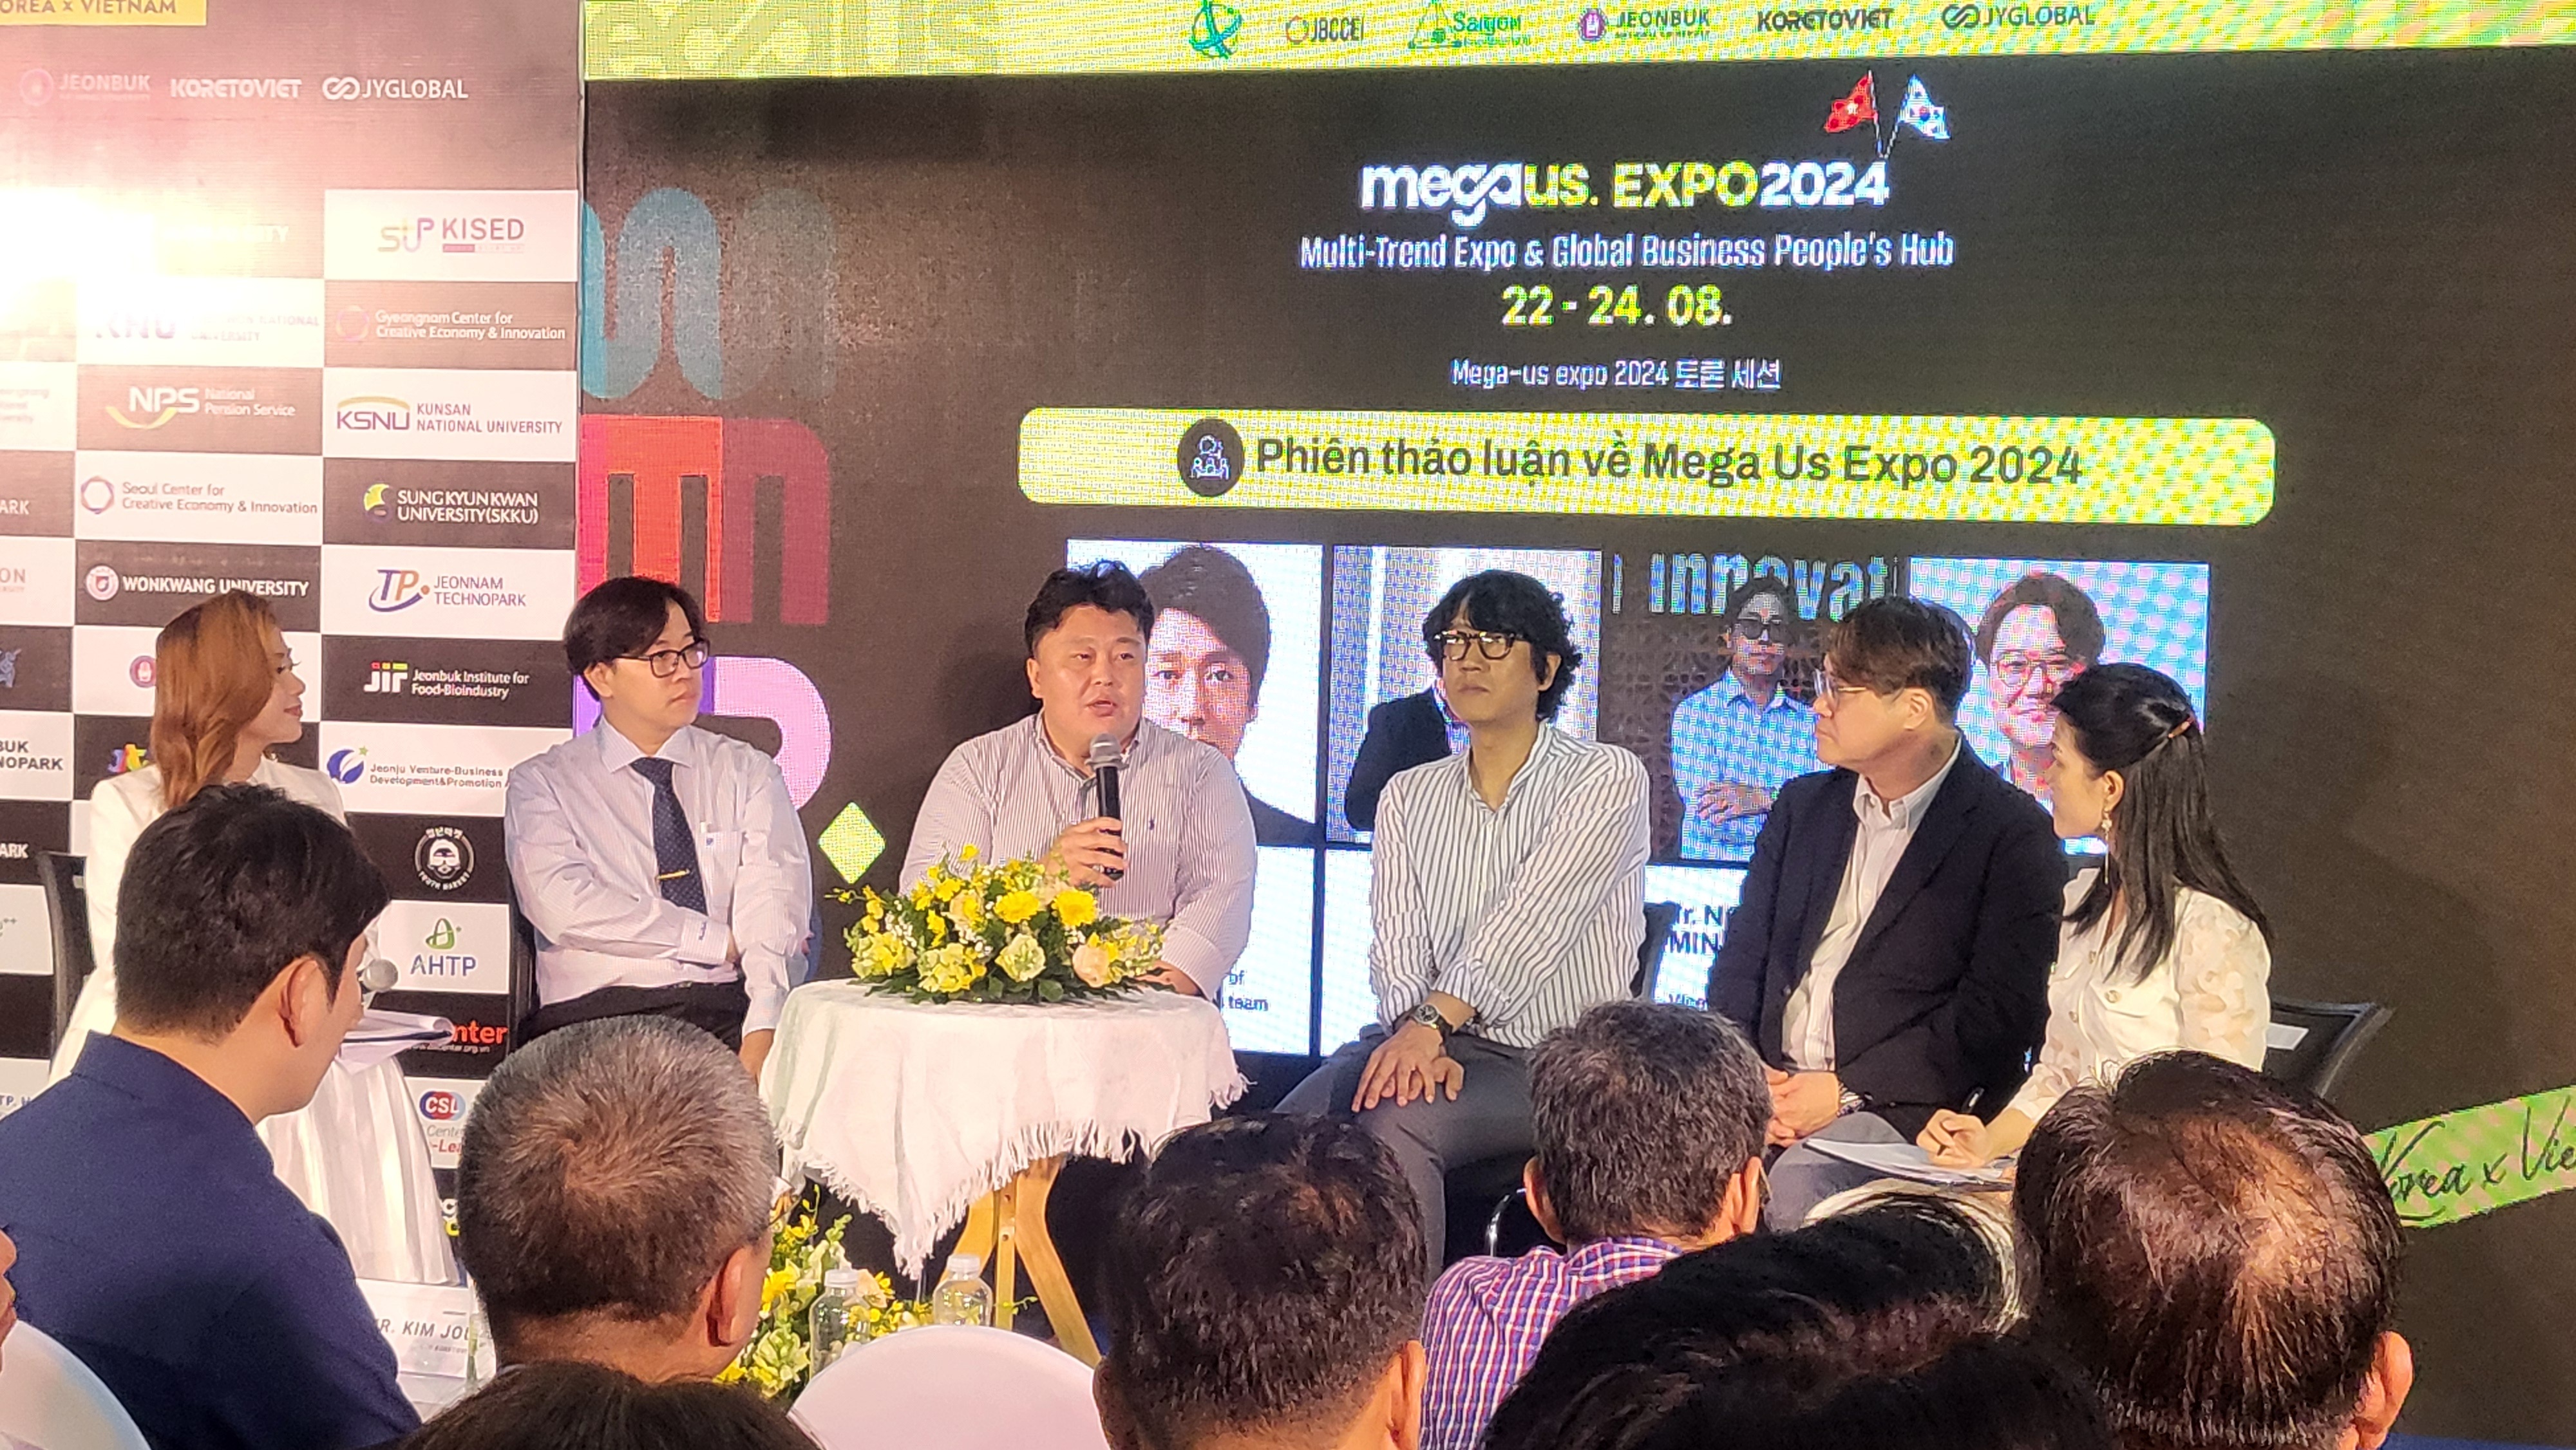 Mega Us Expo 2024 - Cánh cửa kết nối thị trường Việt Hàn